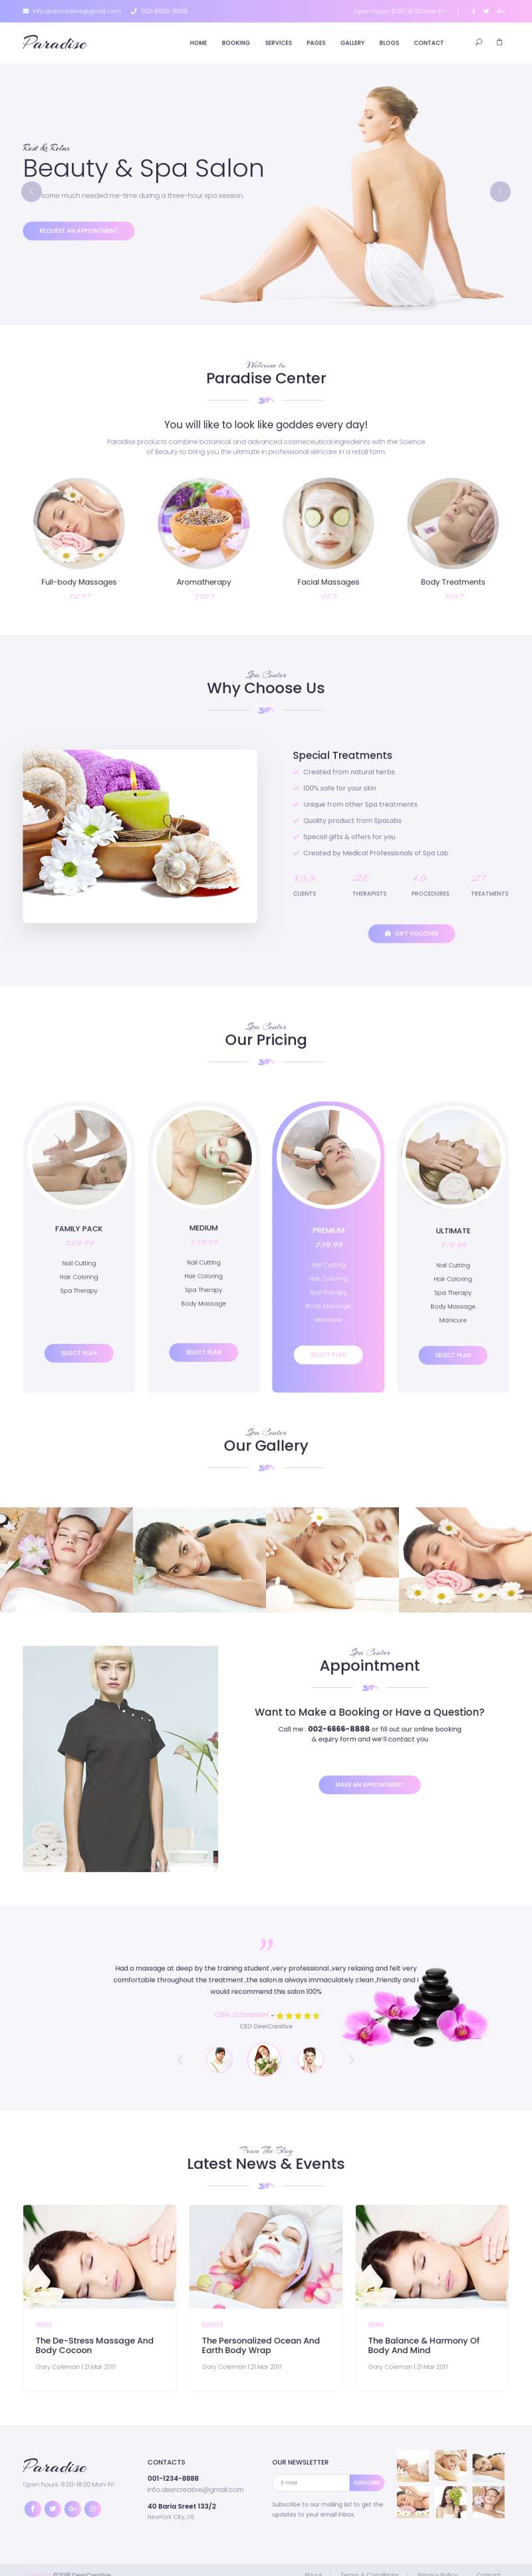 紫色大气的女性美容spa网站模板